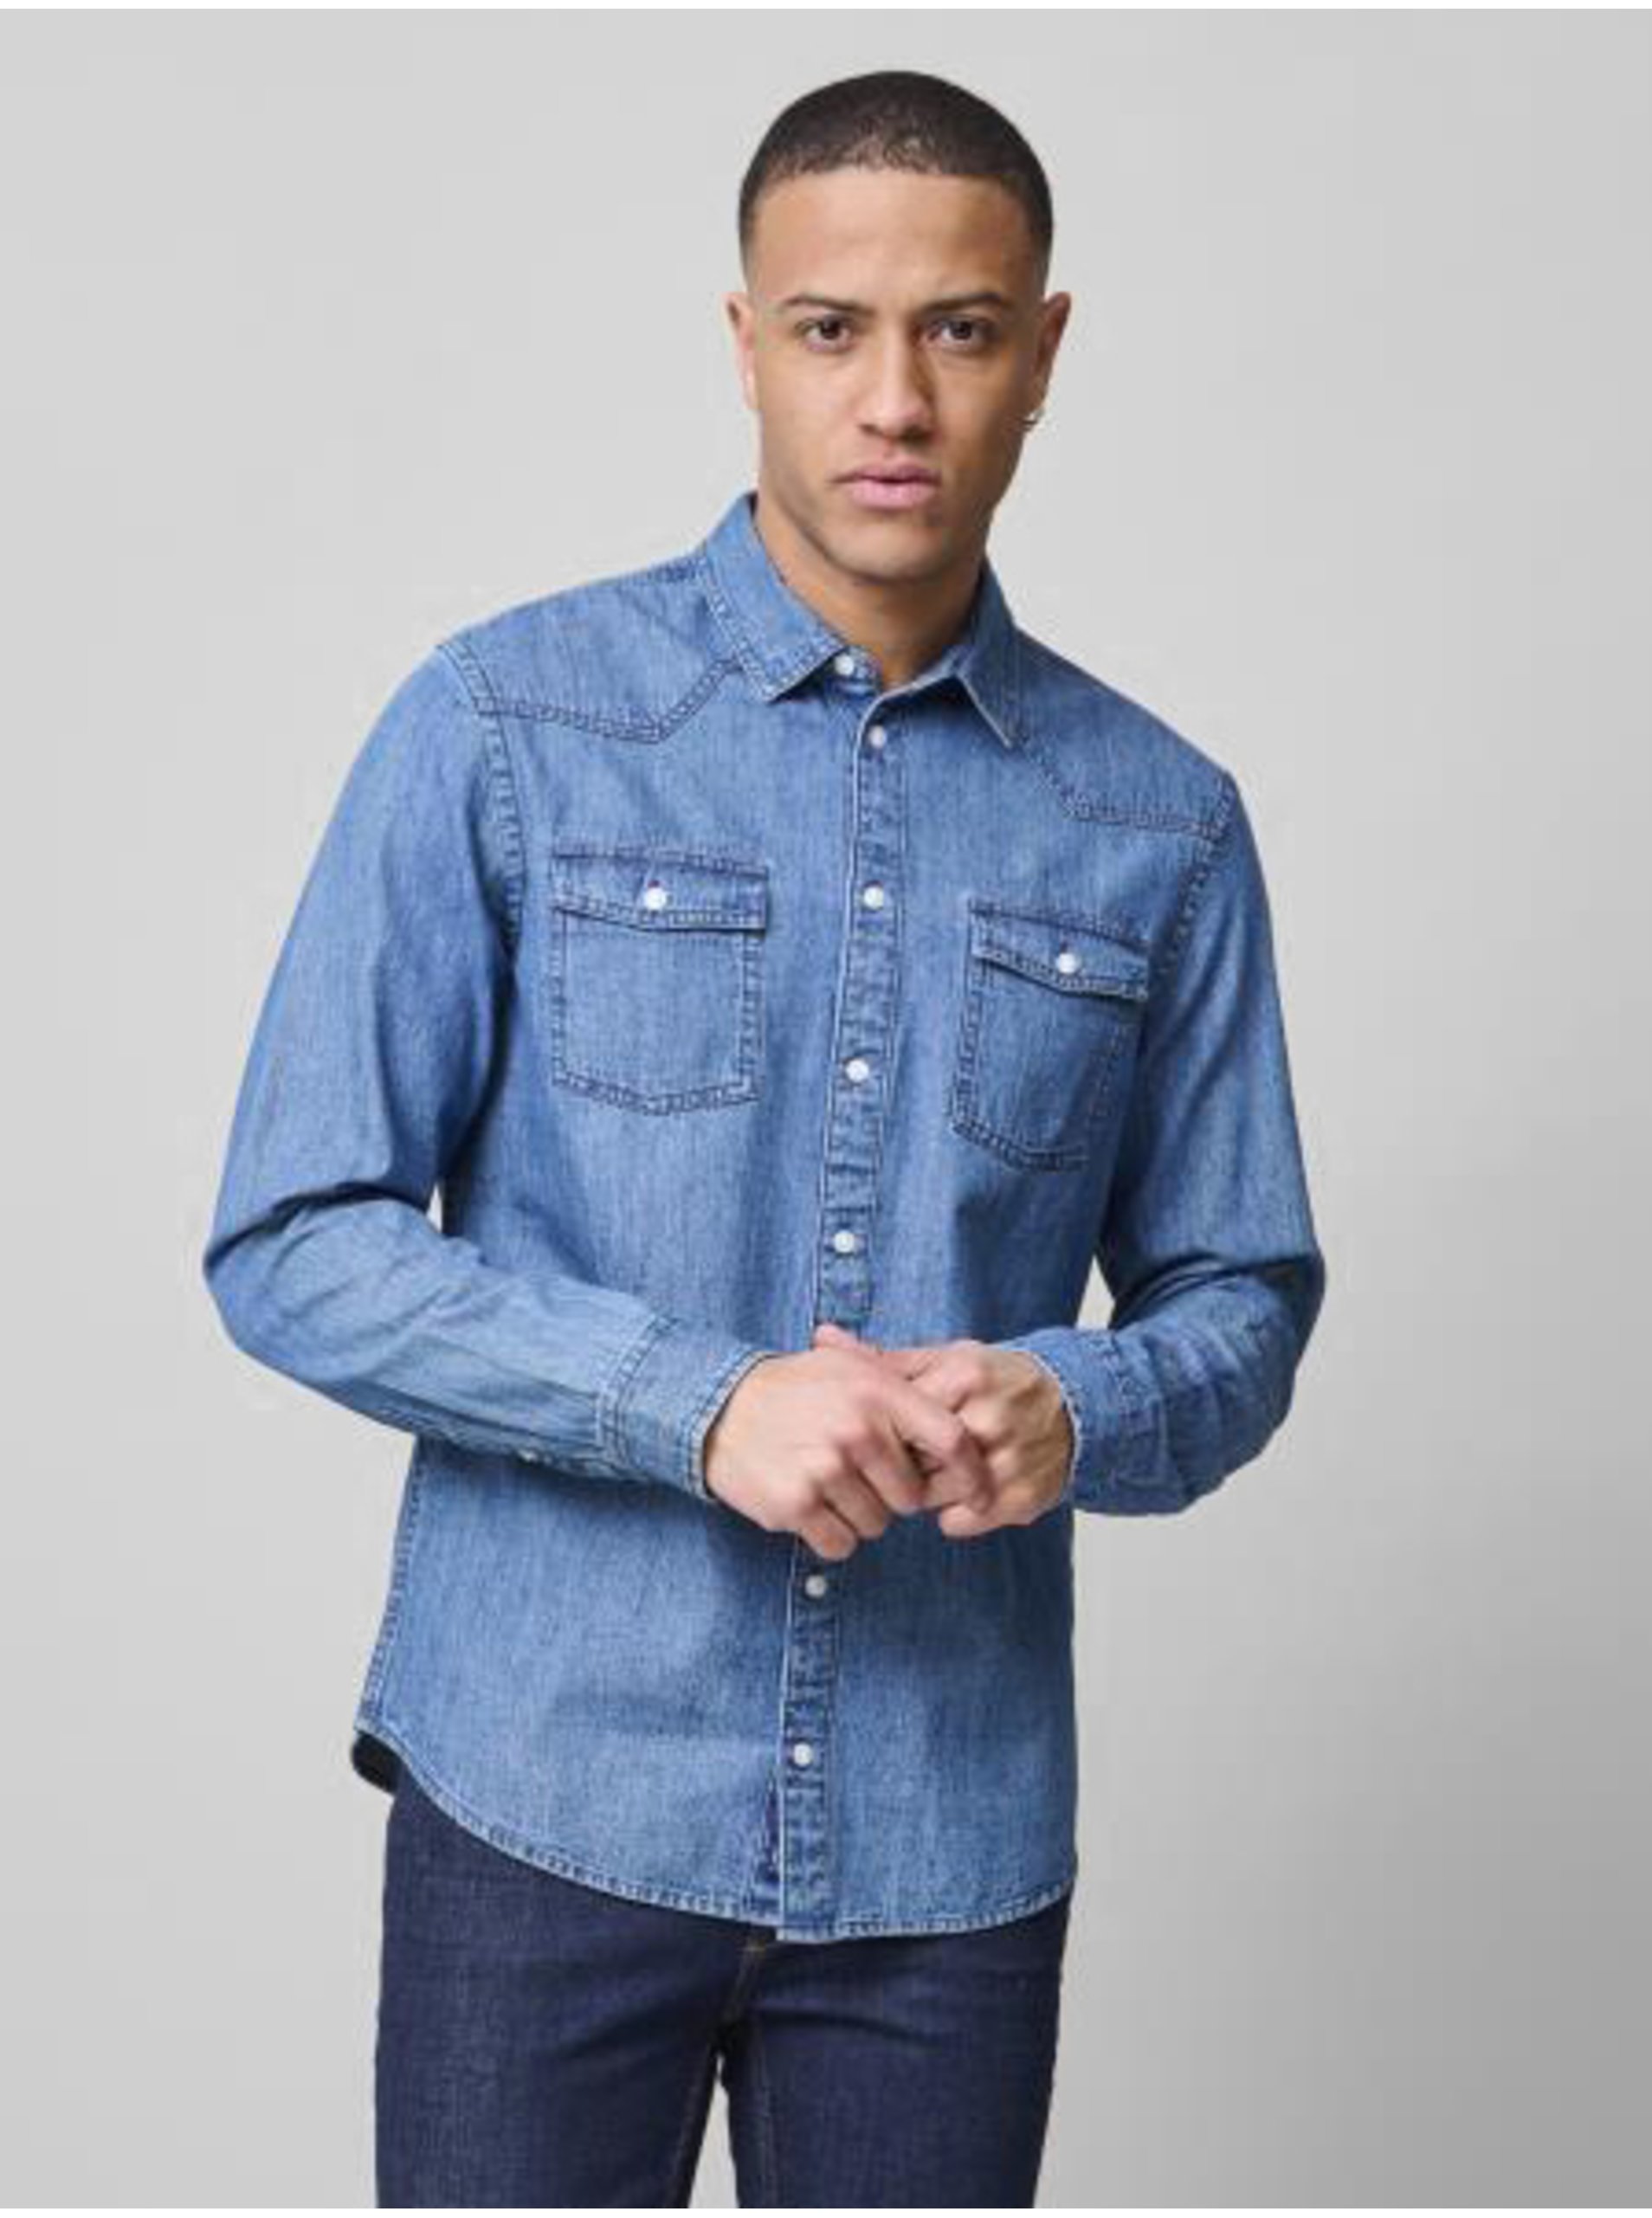 E-shop Modrá džínová košile Blend Nantes